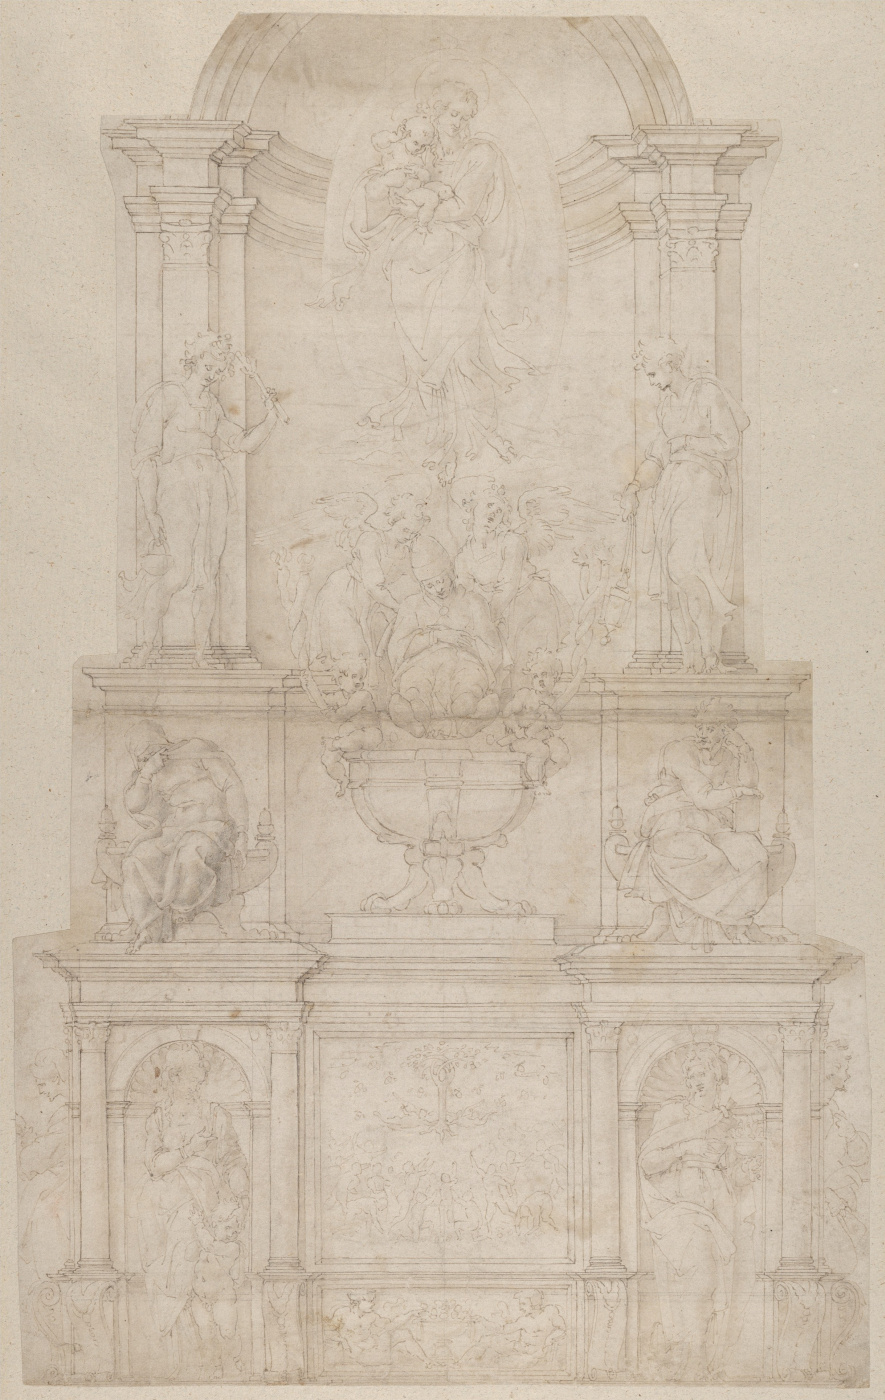 Michelangelo Buonarroti. Sketch for the tomb of Pope Julius II